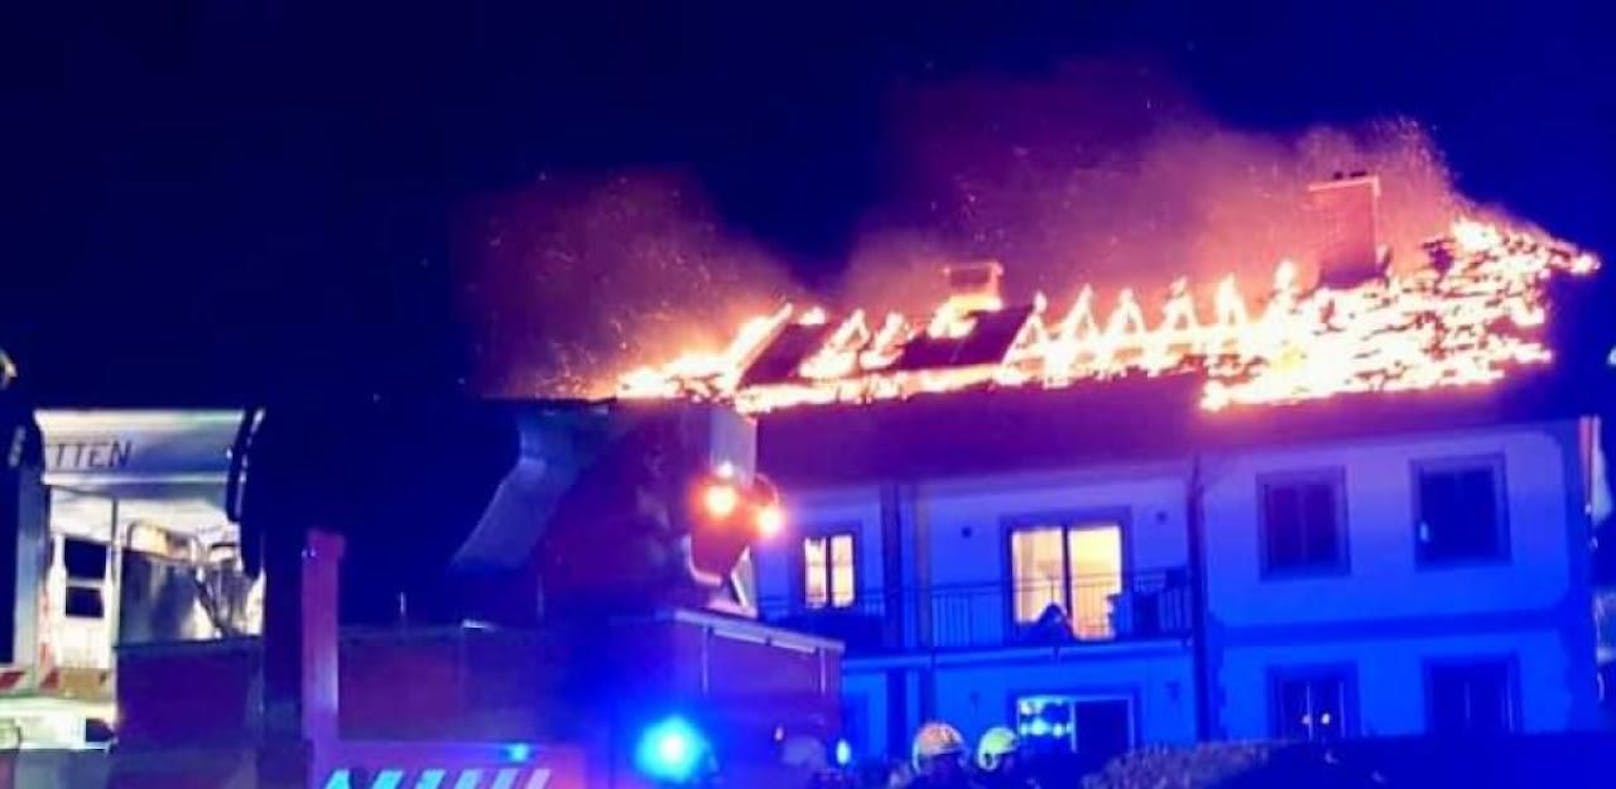 Familie aus brennendem Wohnhaus gerettet